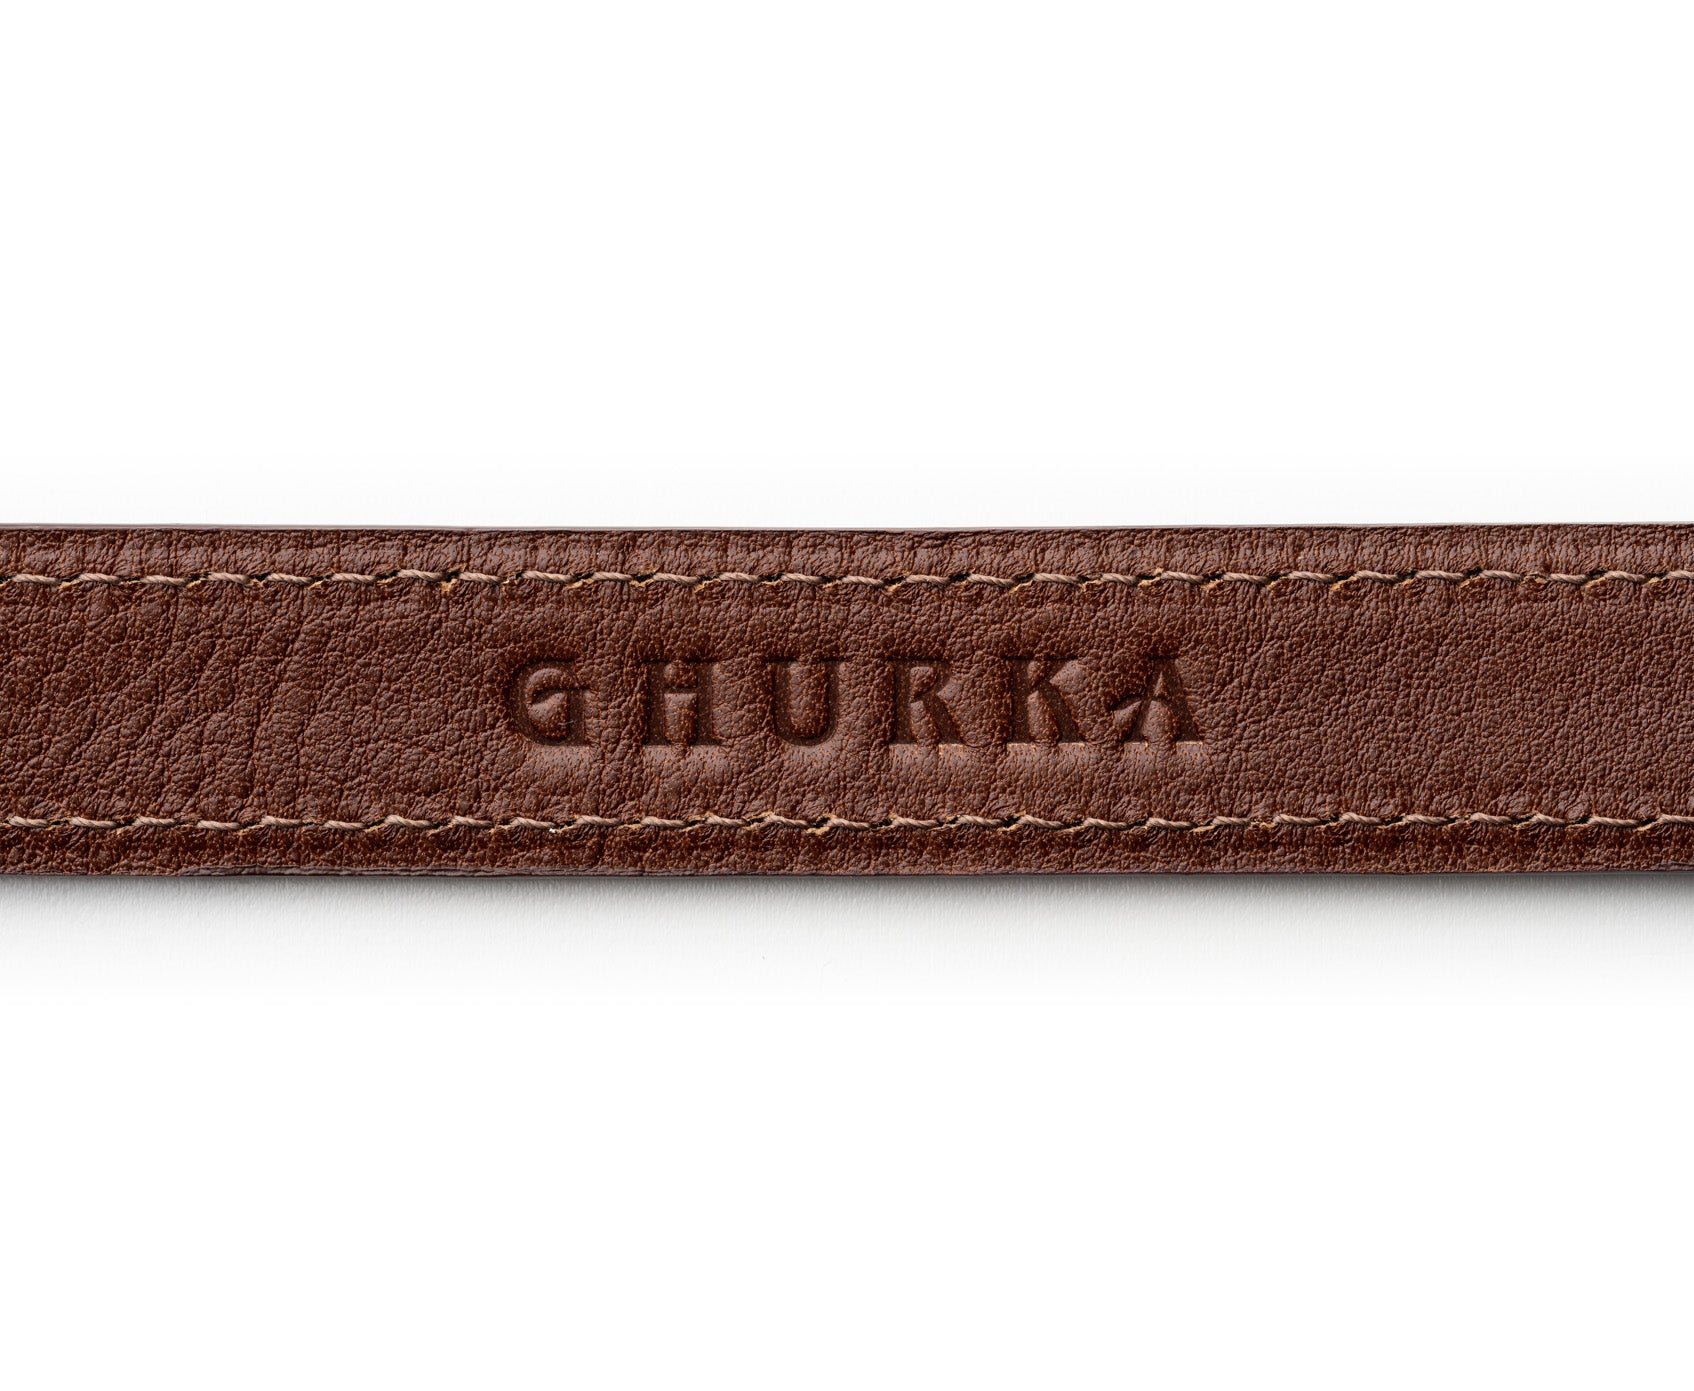 Ghurka dog collar